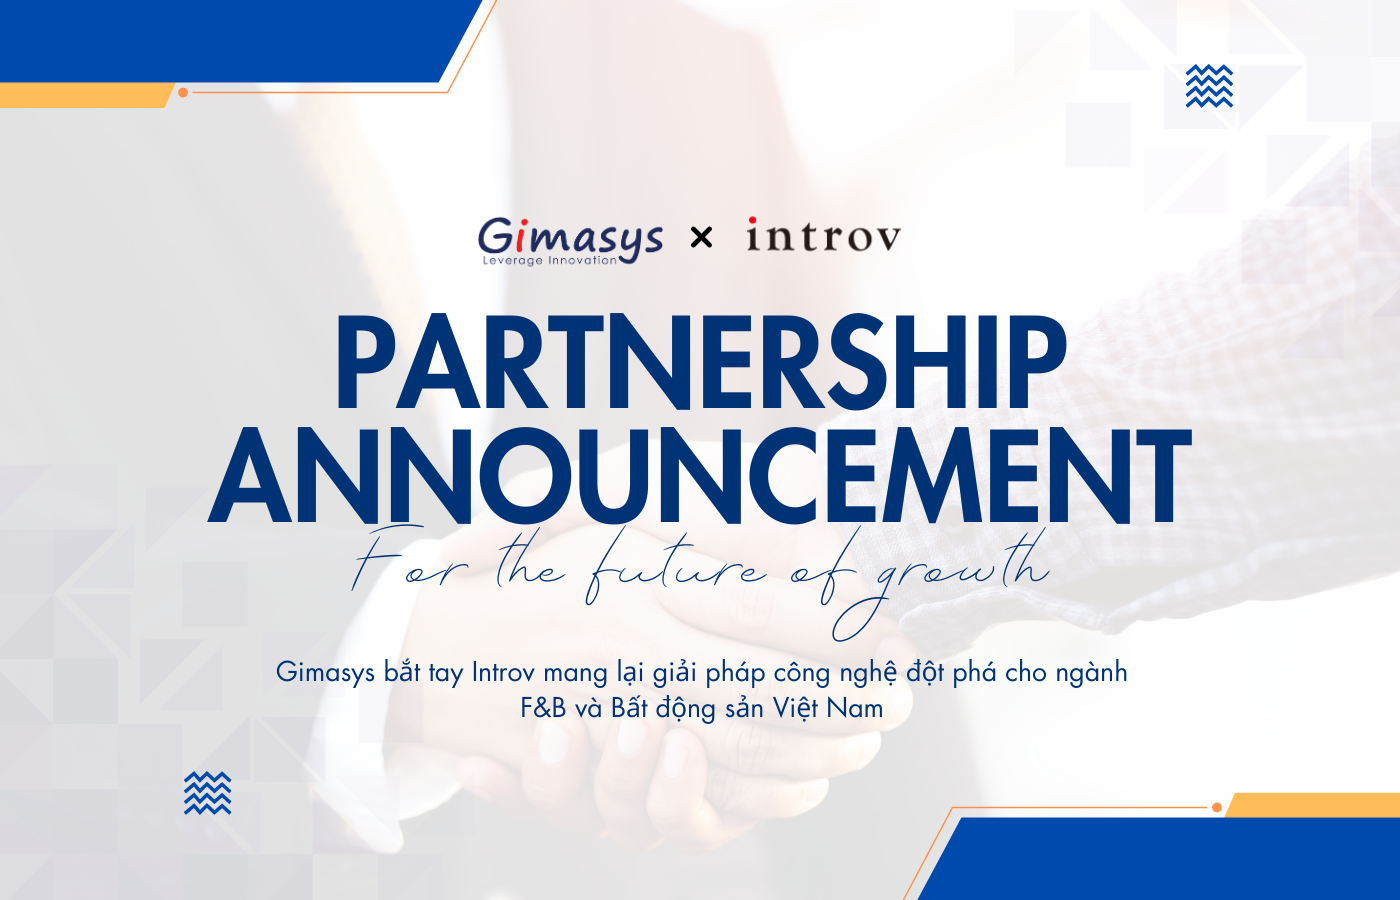 Hợp tác chiến lược giữa Gimasys và Introv